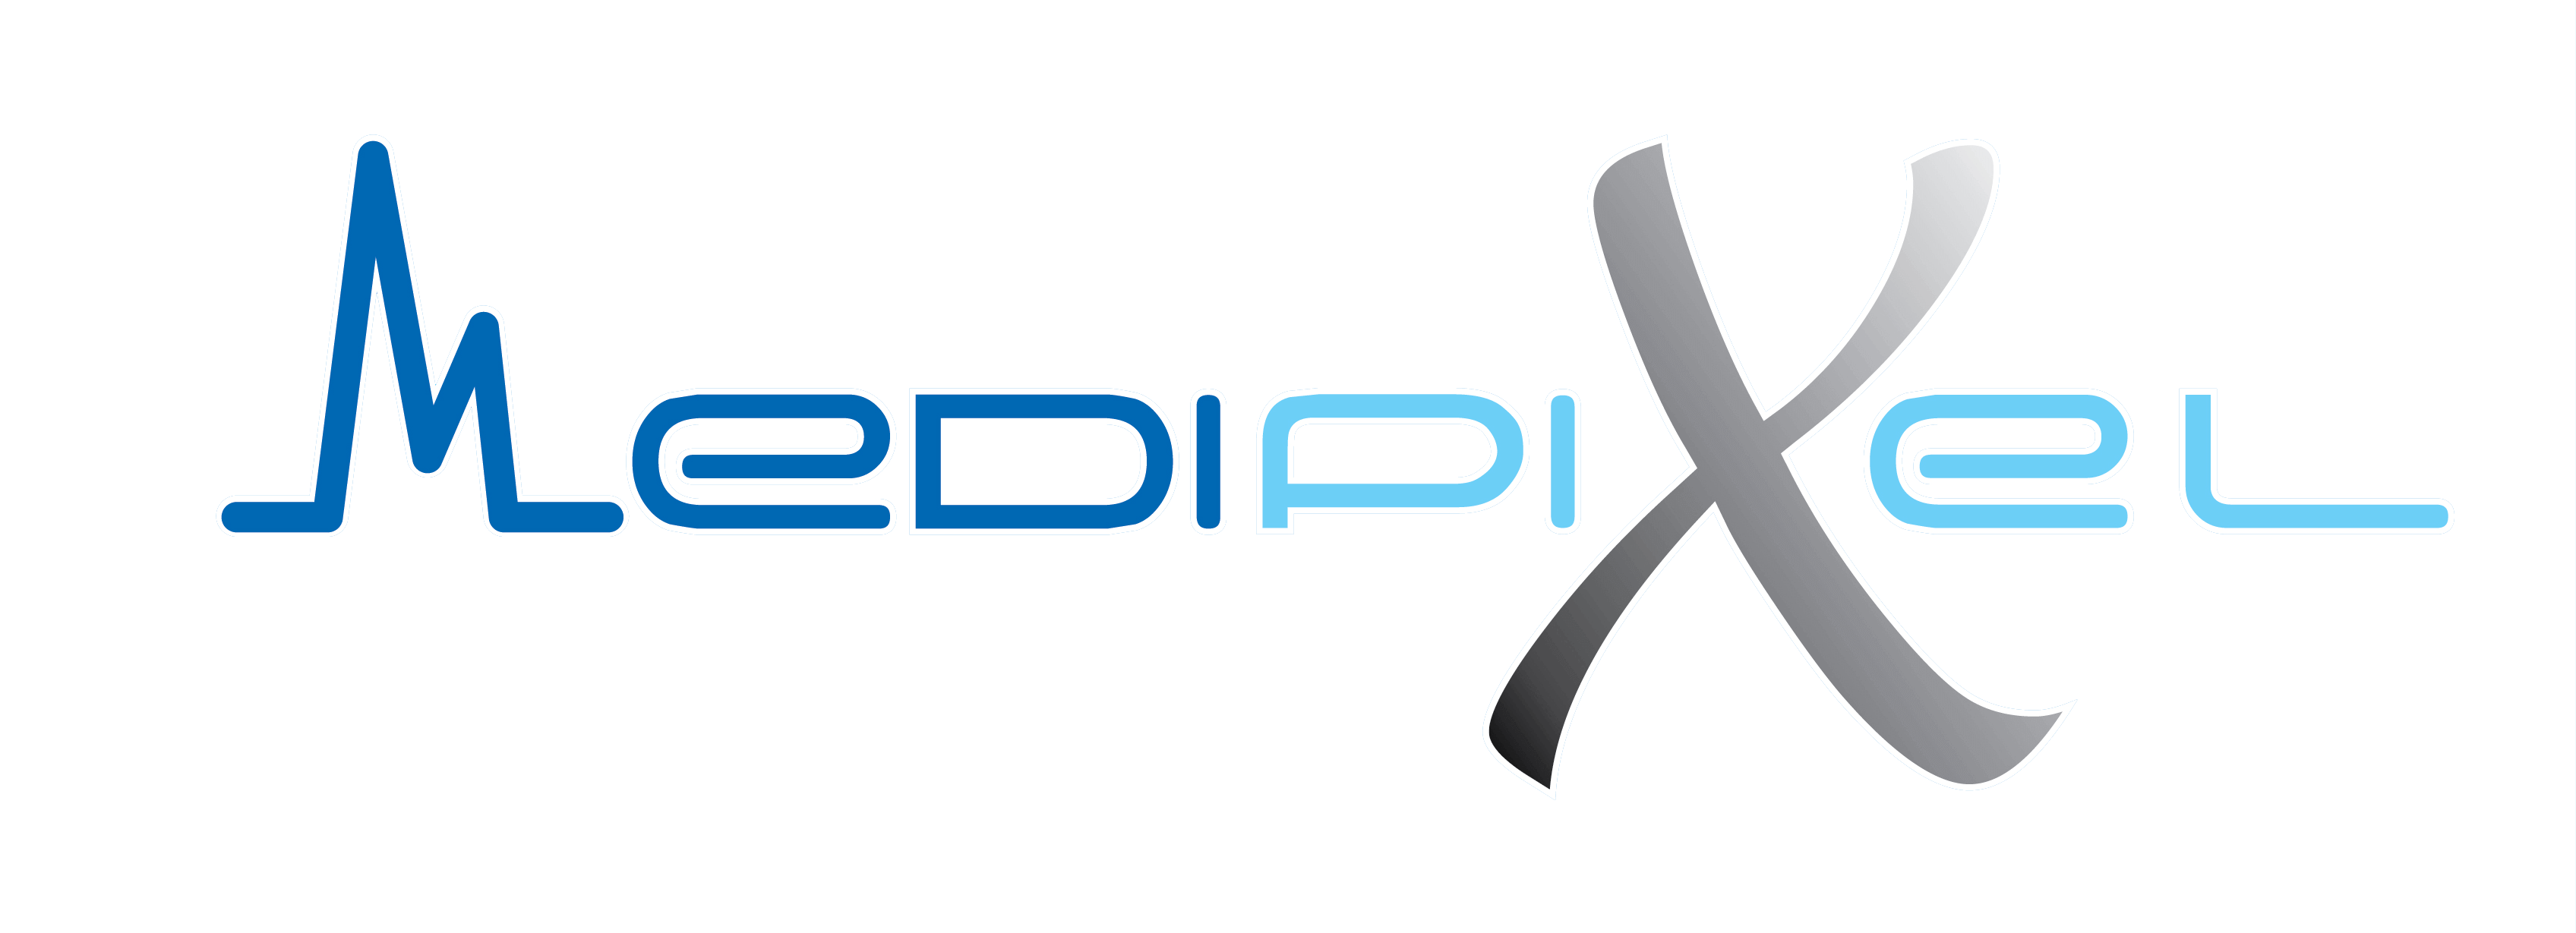 medipixel-logo